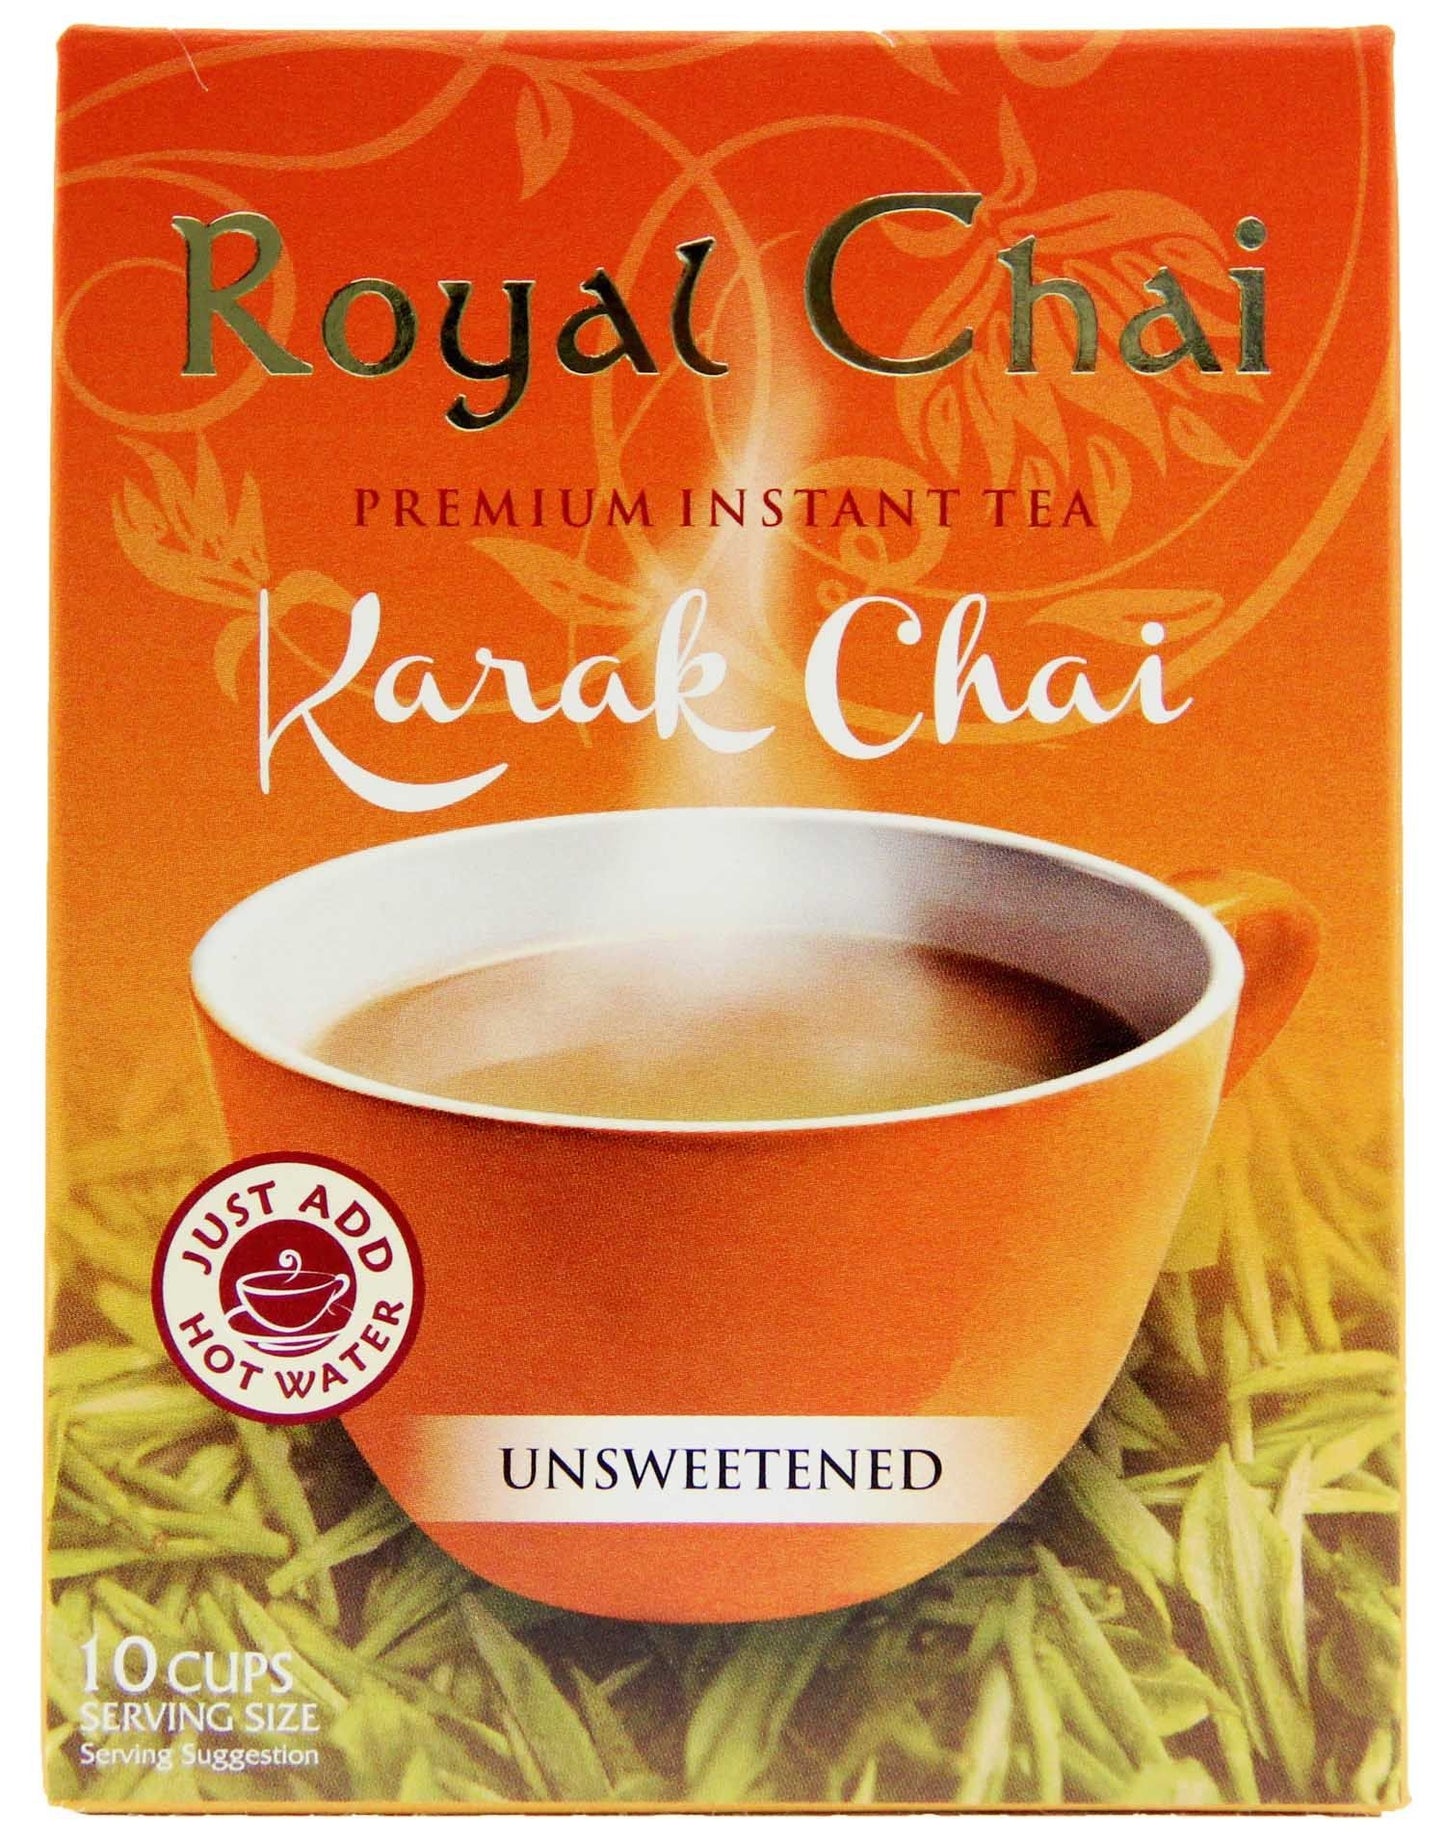 Royal Chai Karak 10 Cups